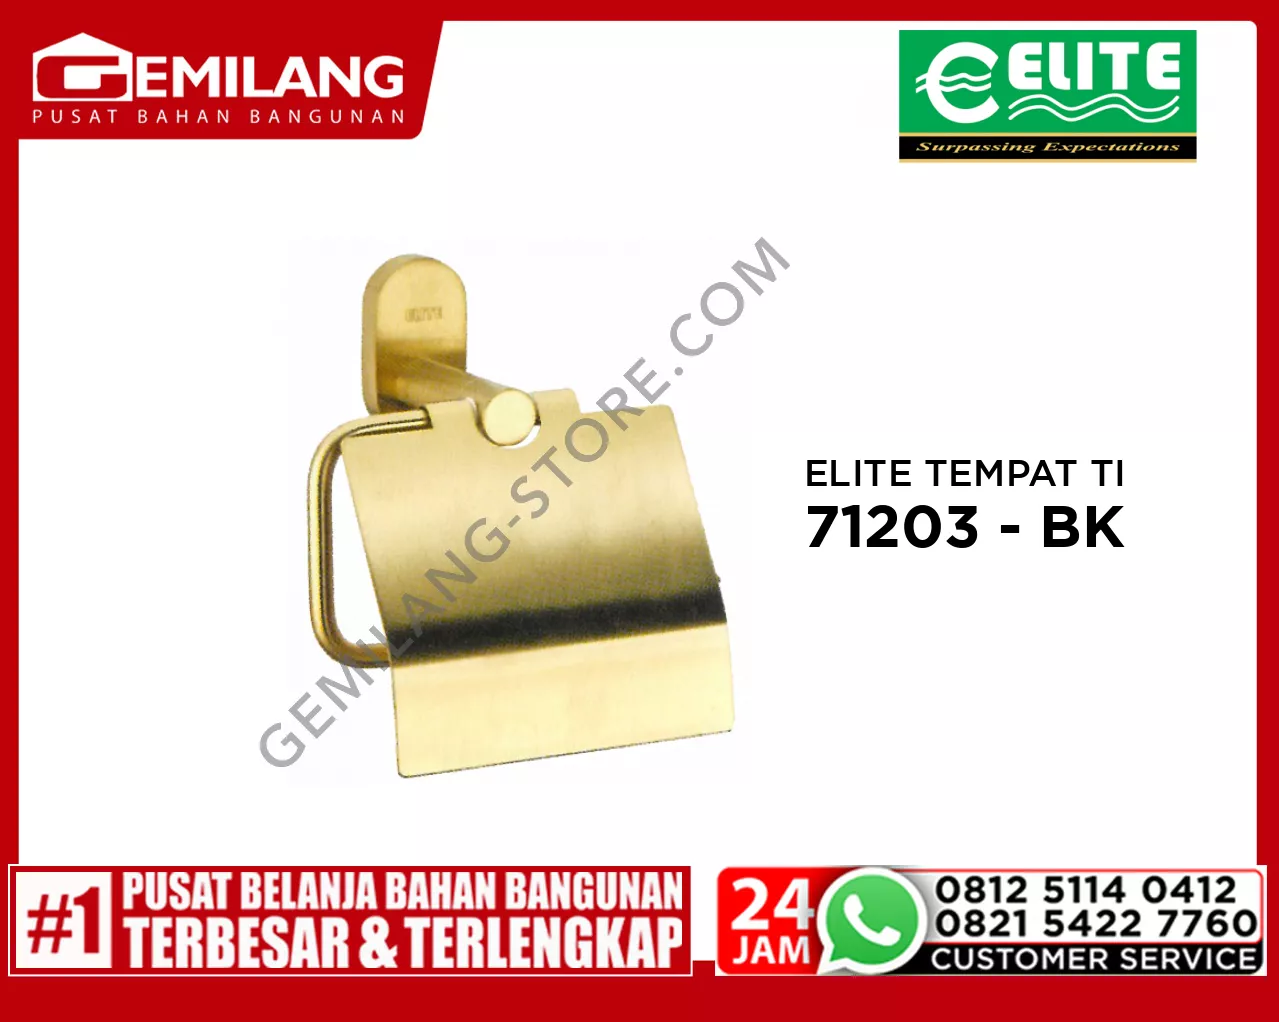 ELITE TEMPAT TISSUE STAINLESS SATIN GOLD E - 71203 - SG